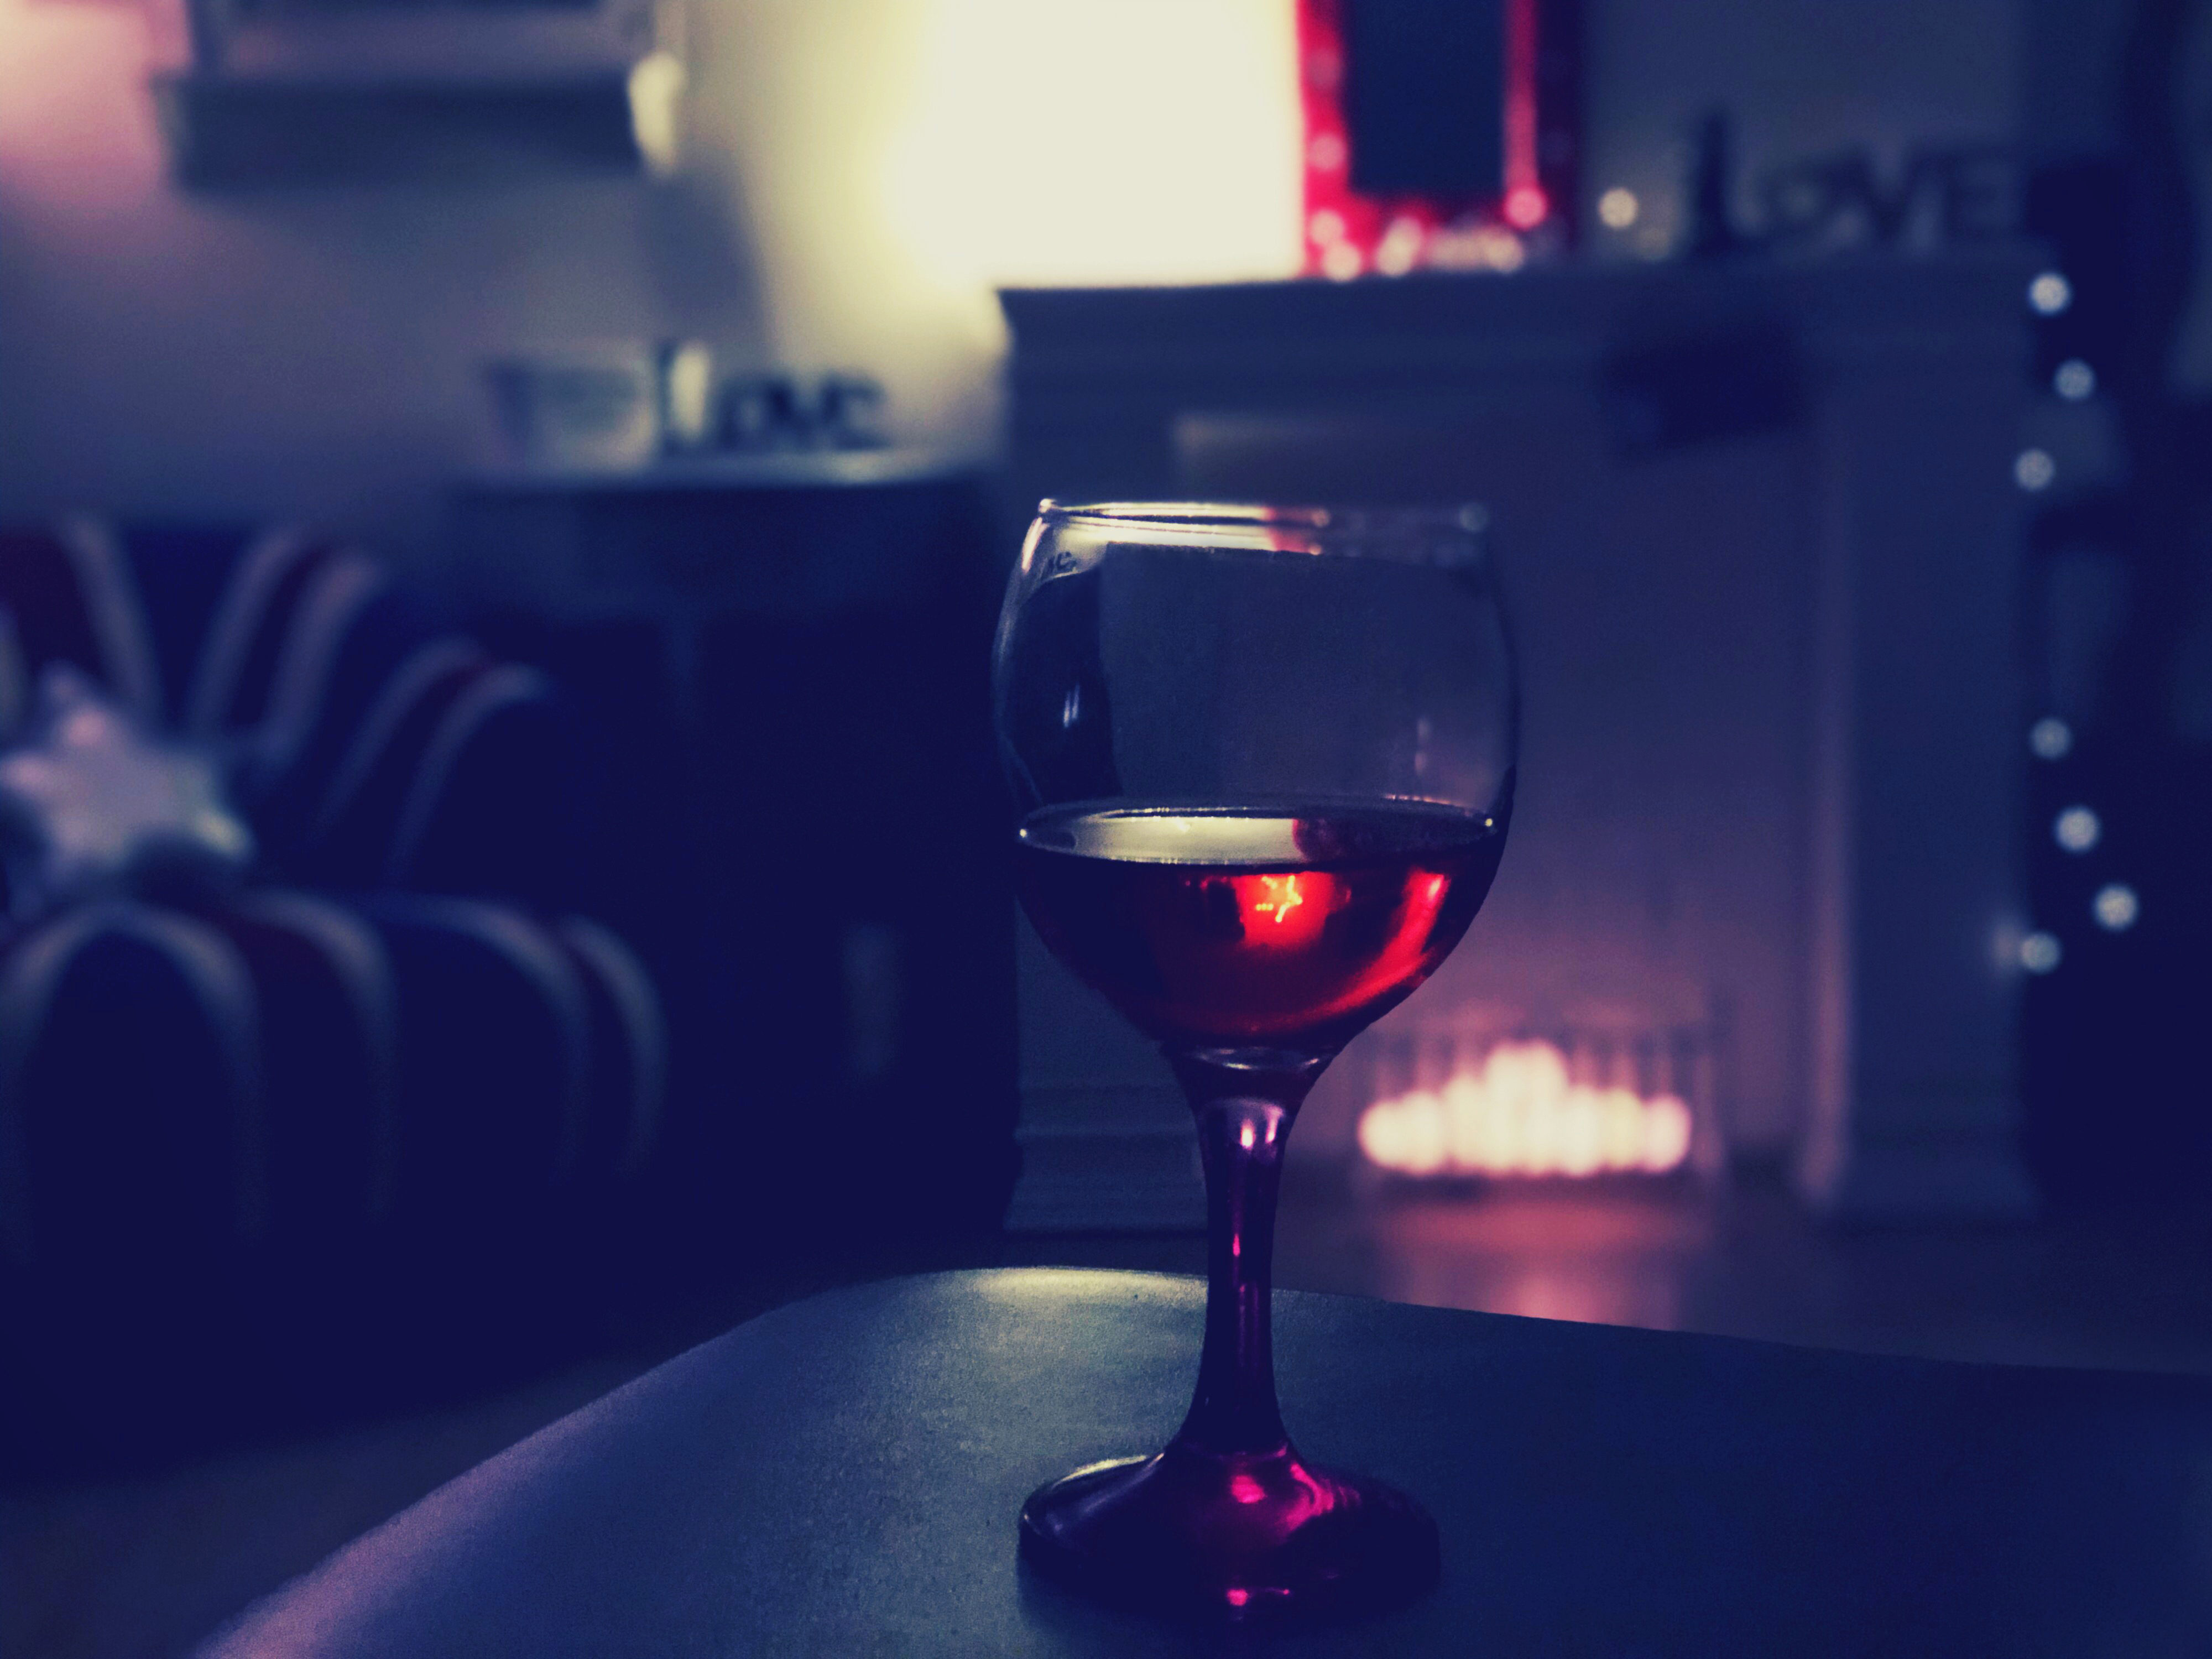 Sklenka červeného vína 